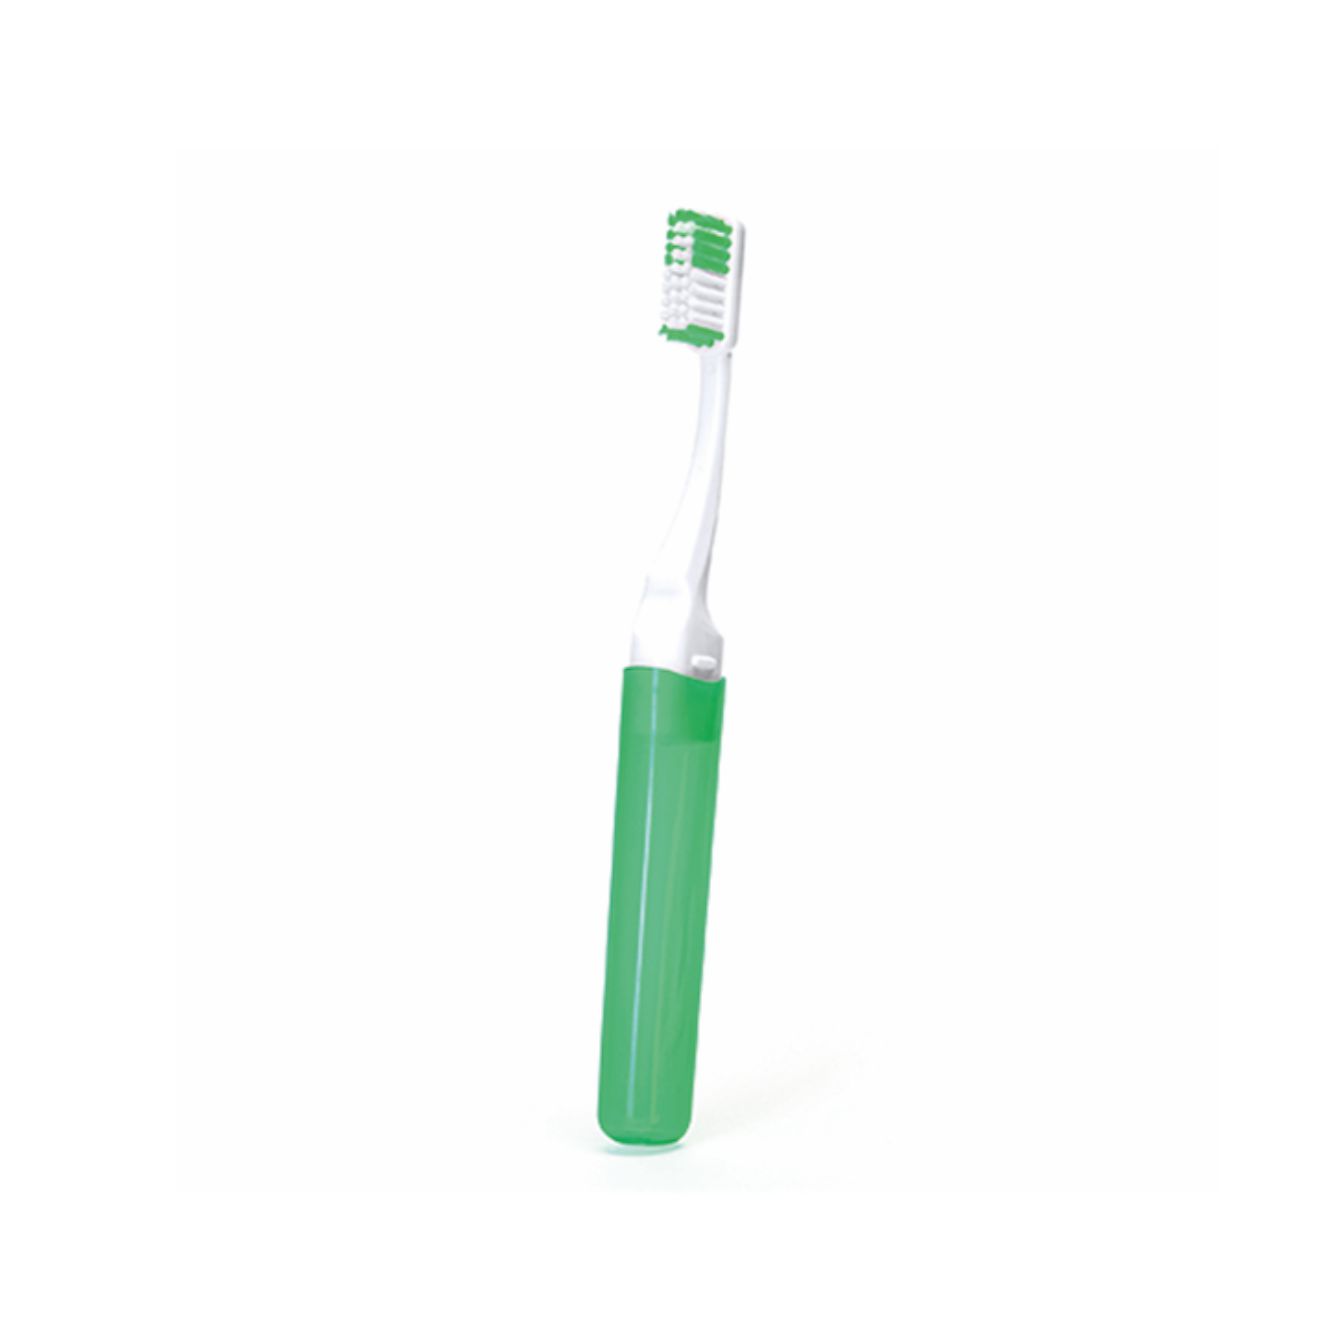 2634-fresh-spazzolino-da-denti-da-viaggio-verde.jpg